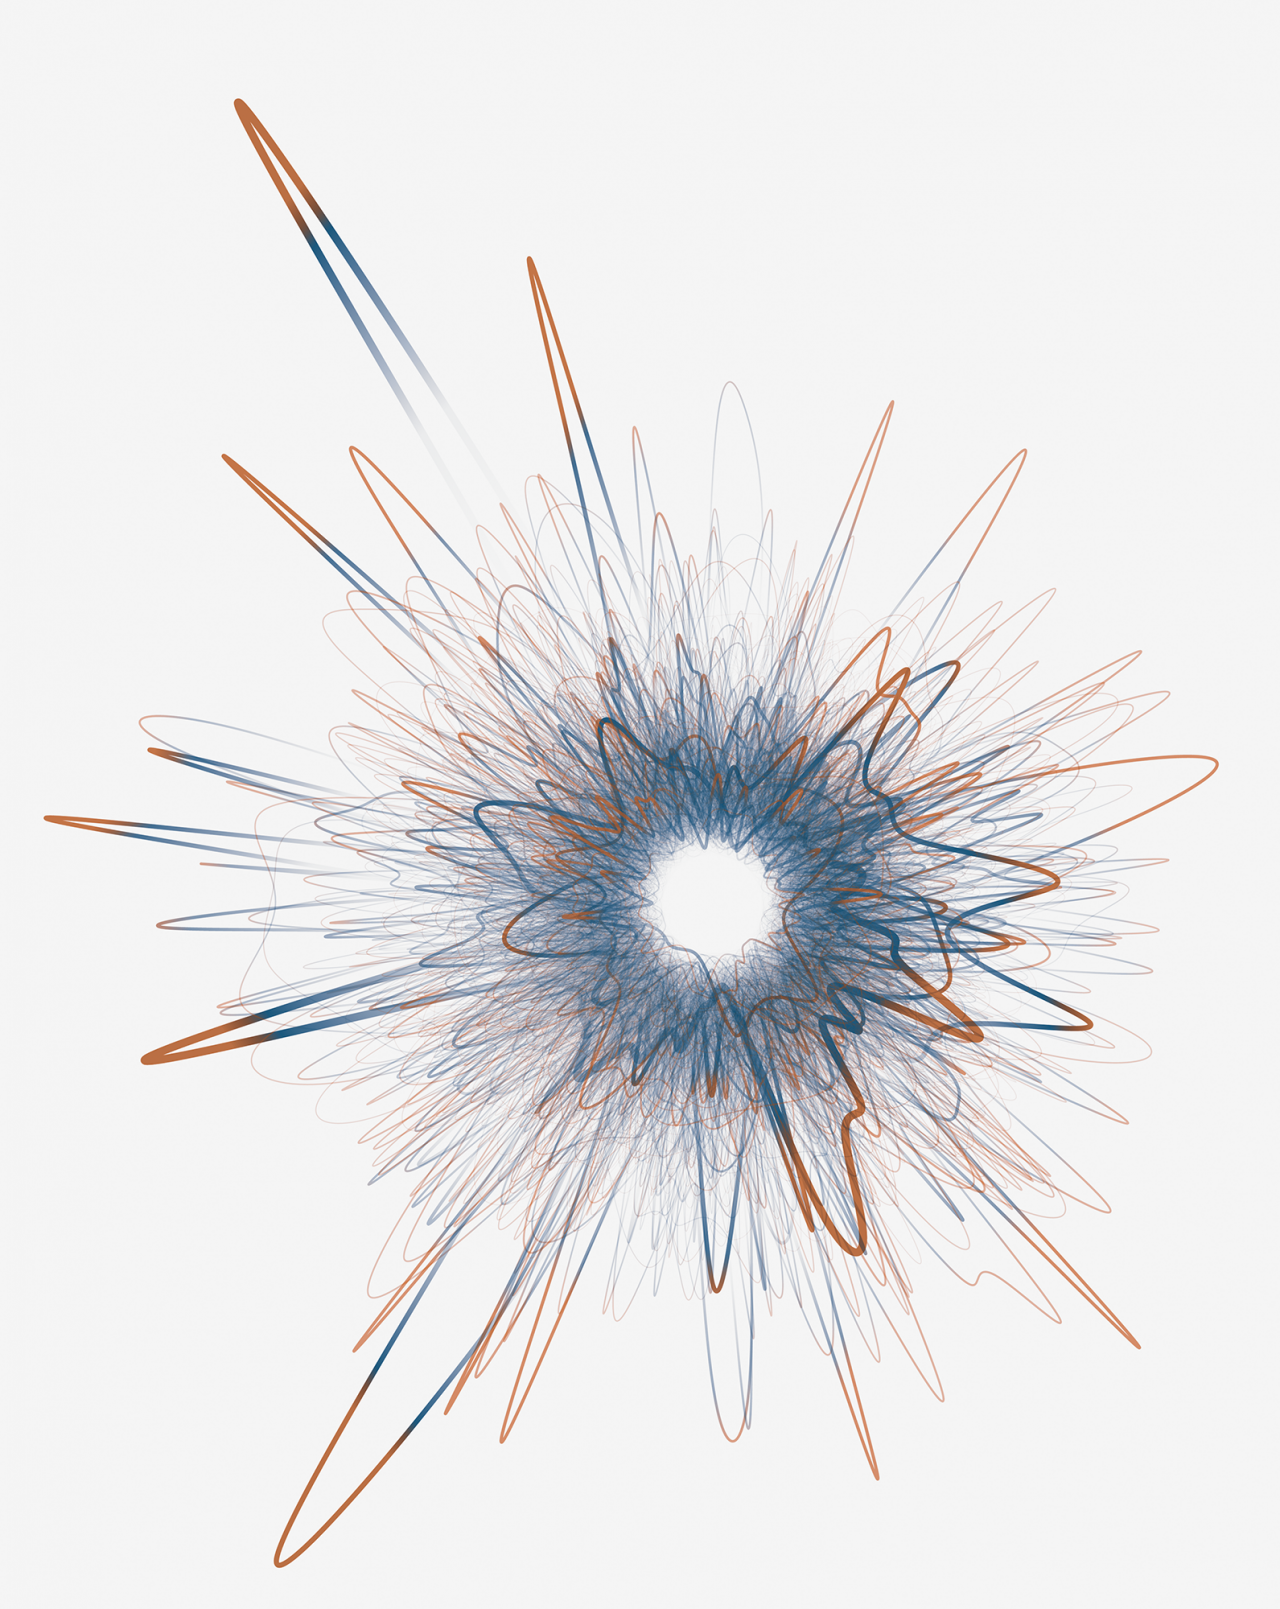 Zu sehen ist eine Visualisierung eines Netzwerkes. Die Form des Netzwerks erinnert an ein Stern, der explodiert.